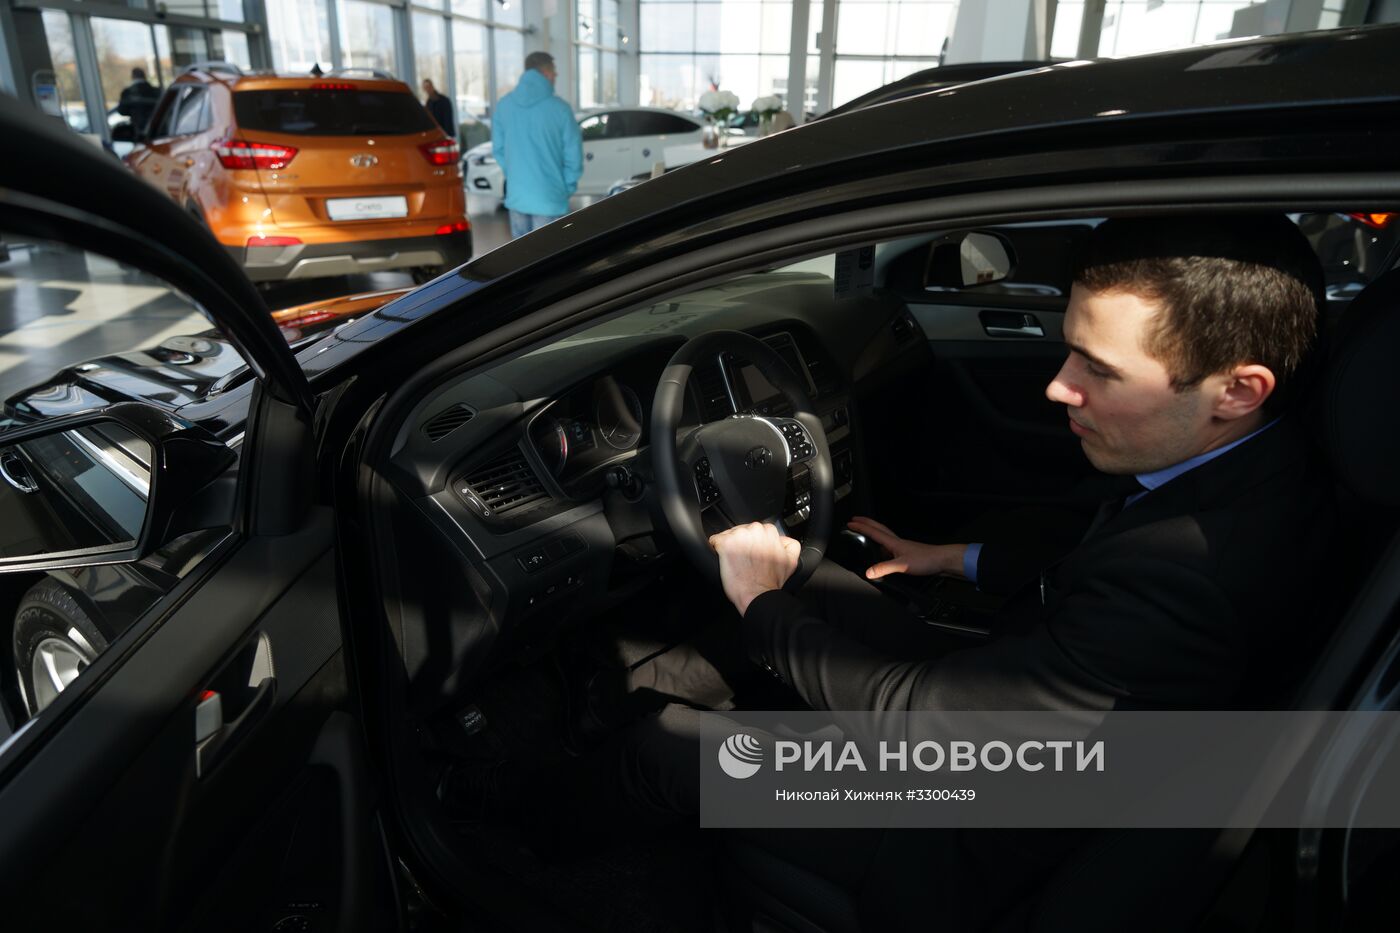 Продажа автомобилей в автосалонах "Юг-авто" в Краснодарском крае